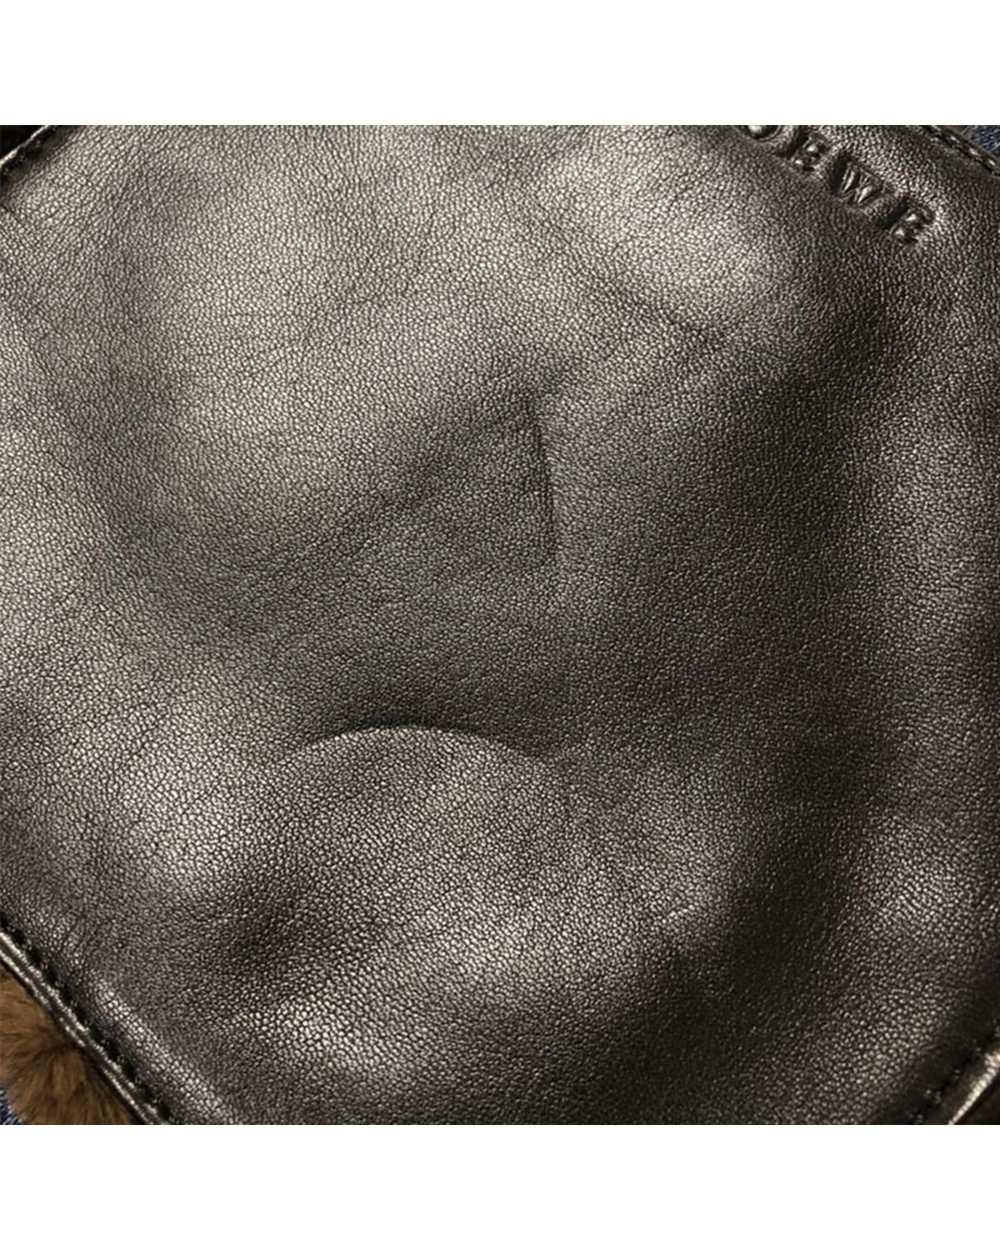 Loewe Mink Fur Nappa Leather Handbag - image 6